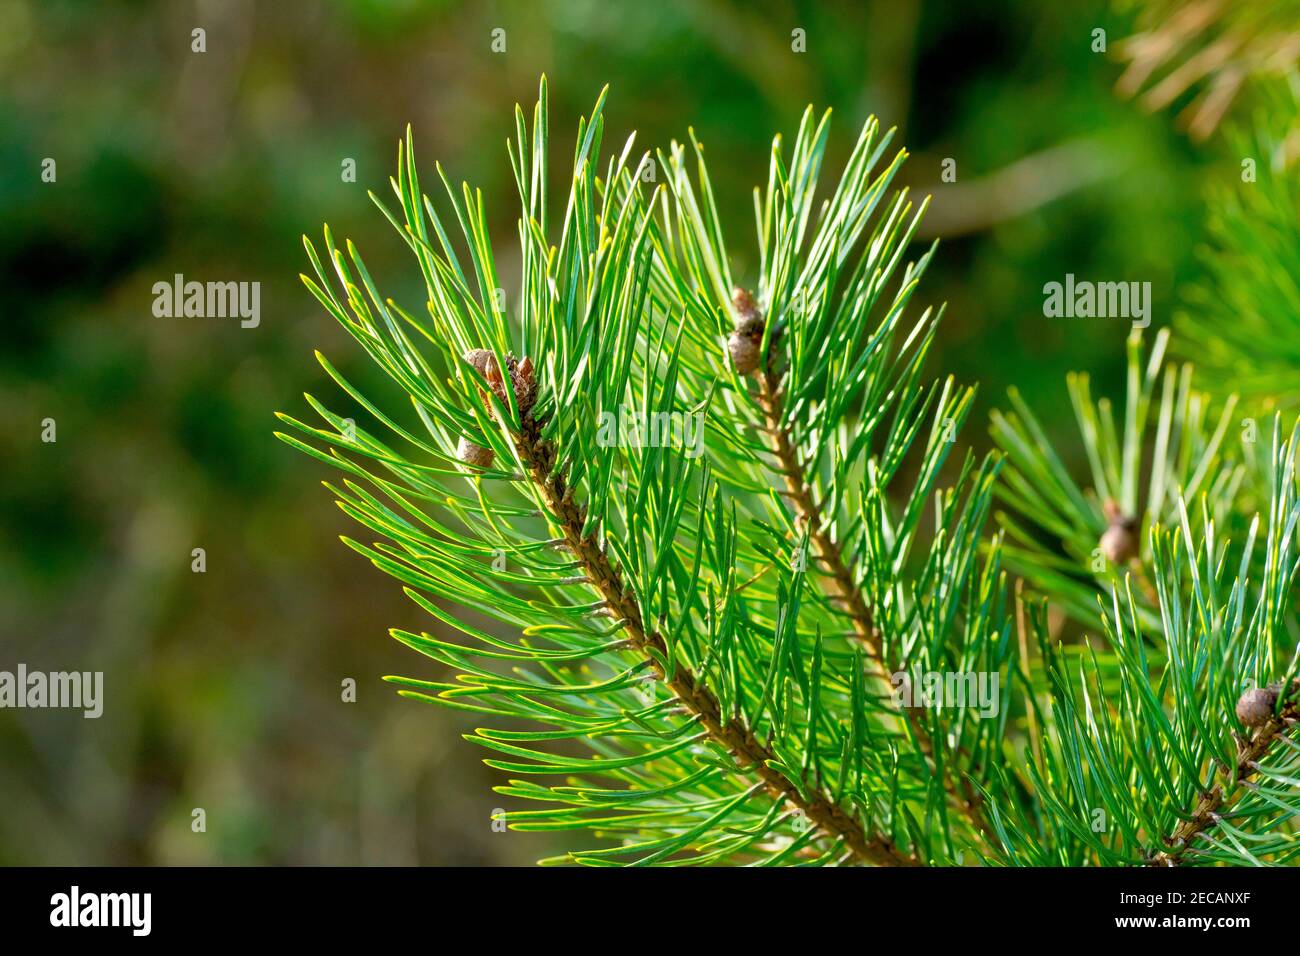 Pino scozzese (pinus sylvestris), primo piano che mostra la punta di un ramo con giovani coni immaturi e aghi verdi retroilluminati. Foto Stock